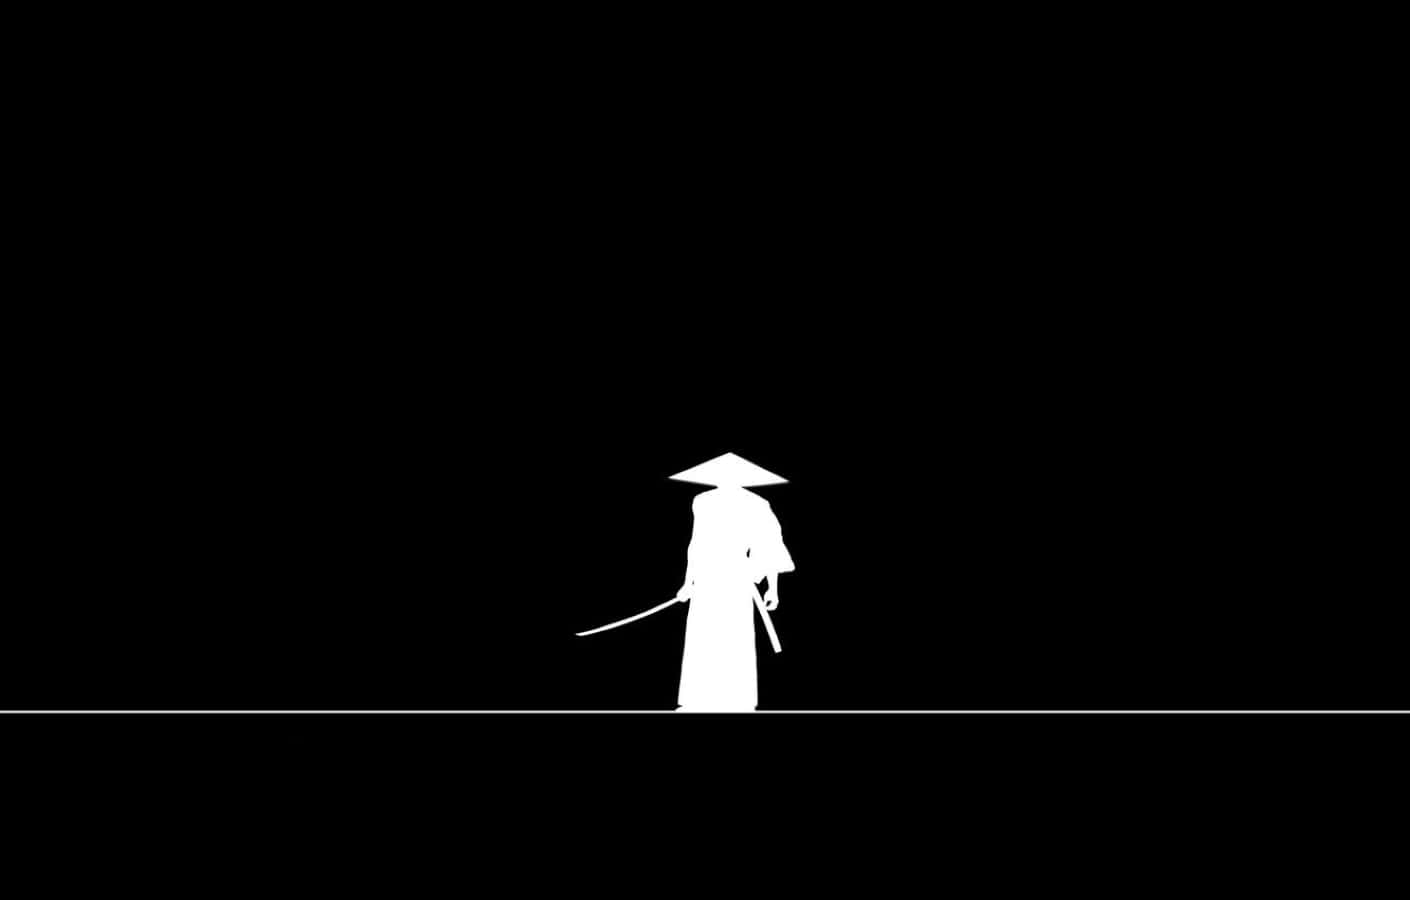 Imagende Un Guerrero Samurái En Blanco Y Negro. Fondo de pantalla